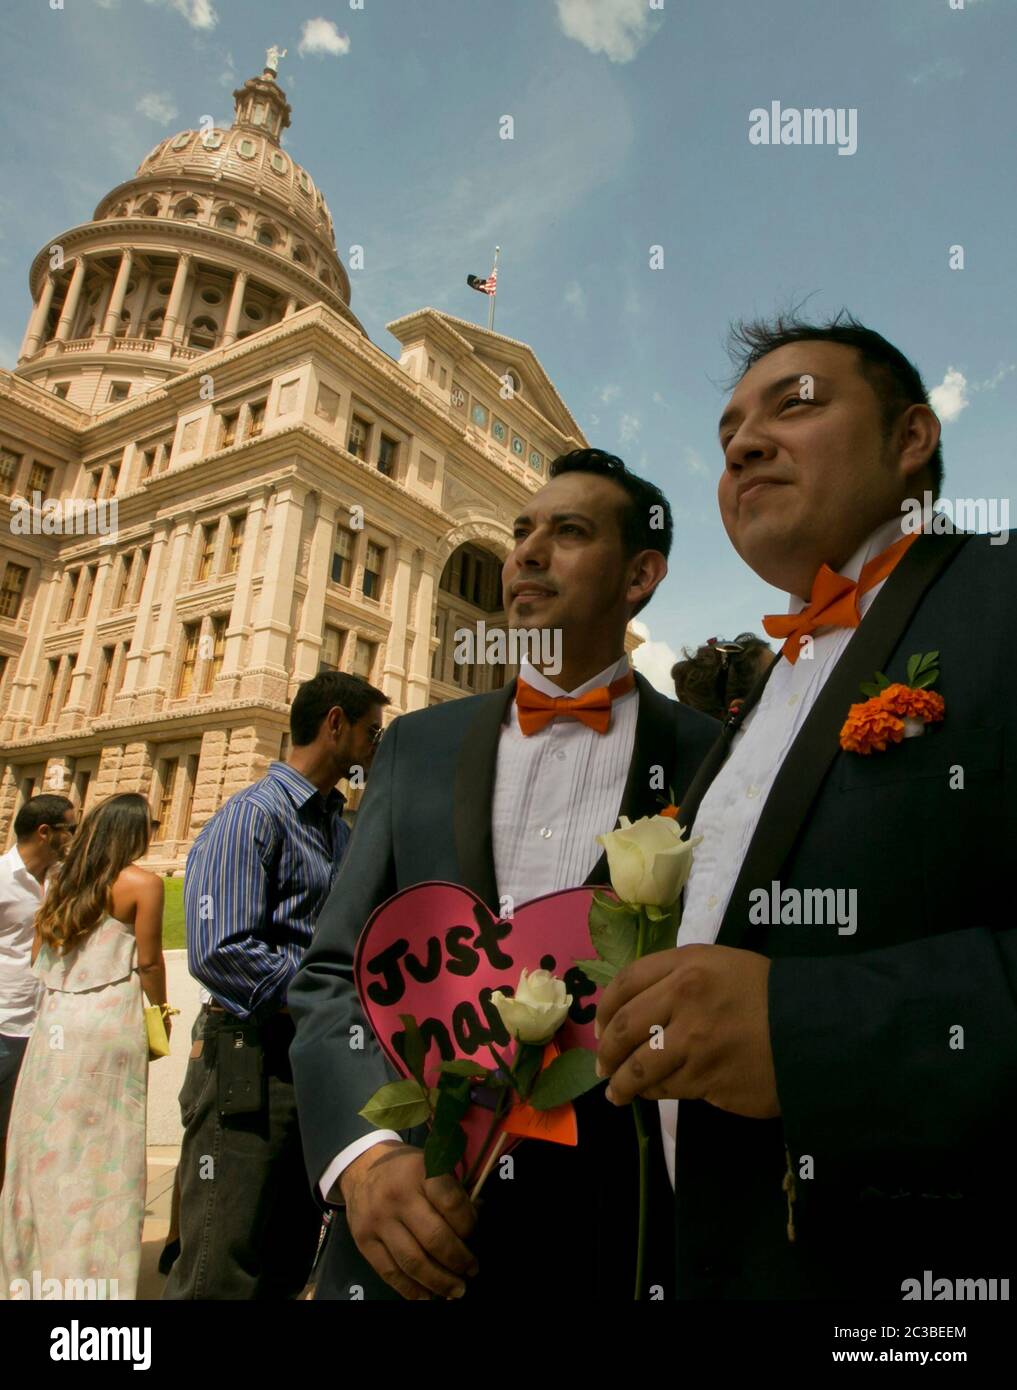 Austin Texas USA, 4. Juli 2015: Eine Woche nach den USA Entscheidung des Obersten Gerichtshofs zur Legalisierung der gleichgeschlechtlichen Ehe in den USA wurden Dutzende von Paaren während einer schwulen Hochzeitszeremonie auf dem Rasen des Texas Capitol-Gebäudes verheiratet. ©Marjorie Kamys Cotera/Daemmrich Photography Stockfoto